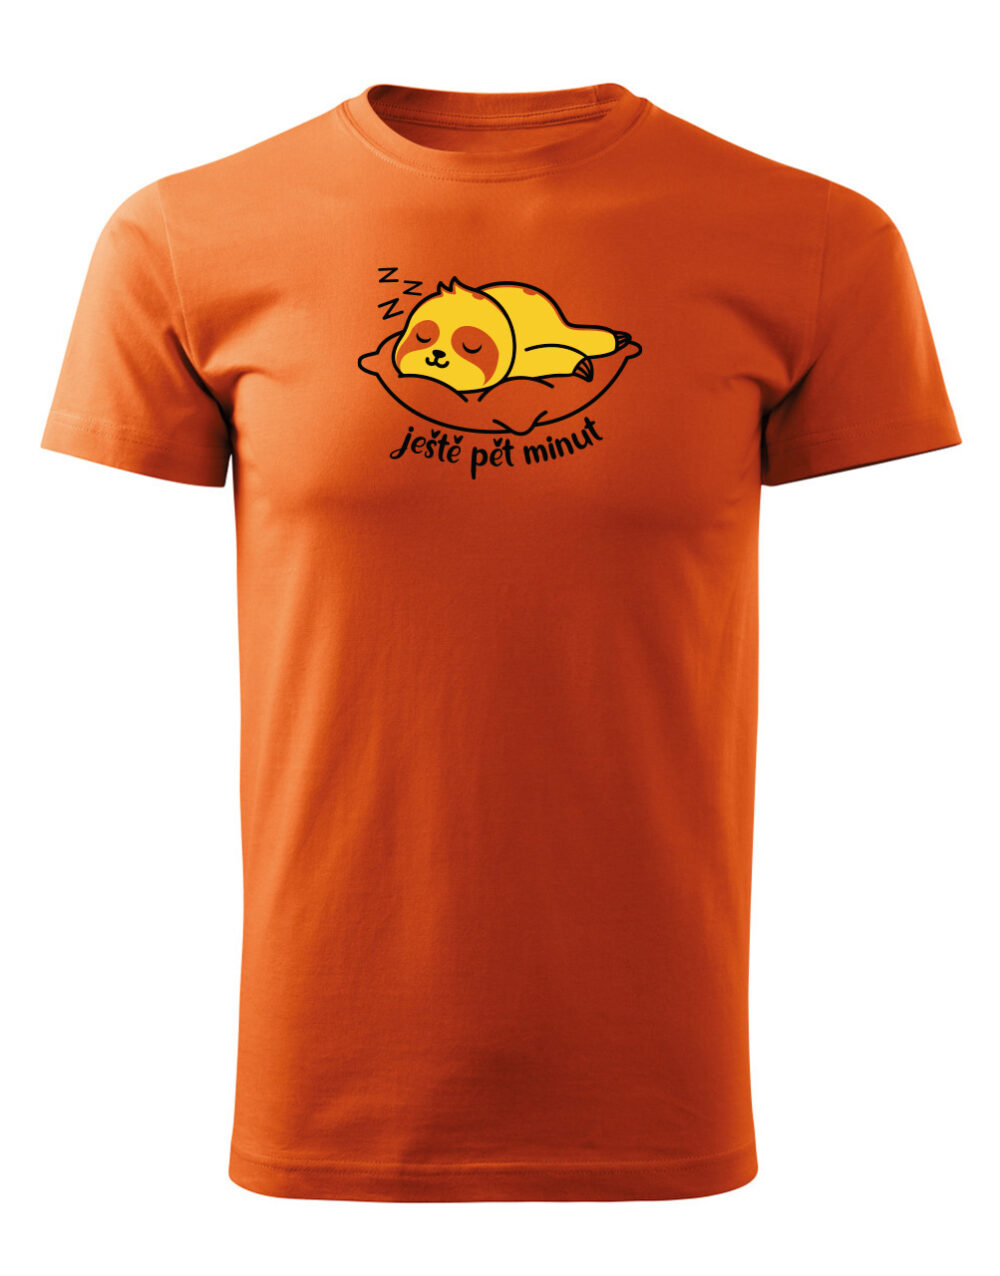 Pánské tričko s potiskem Ještě pět minut oranžová